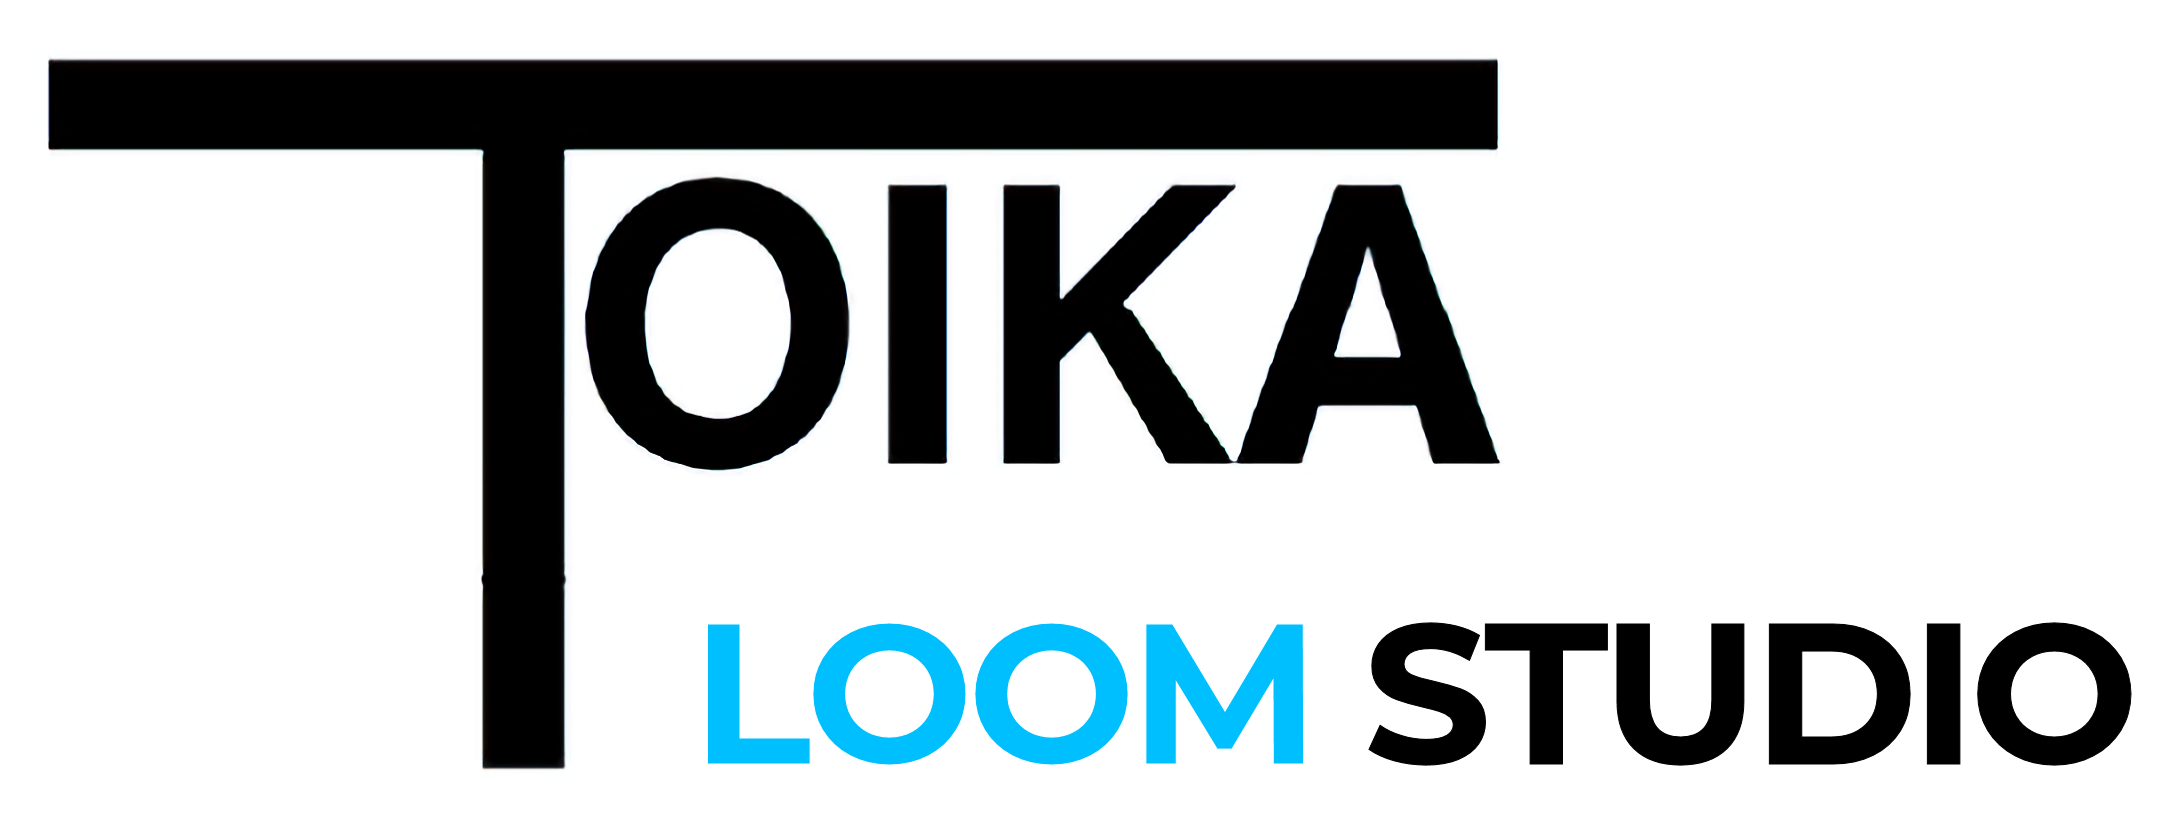 Toika Loom Studio